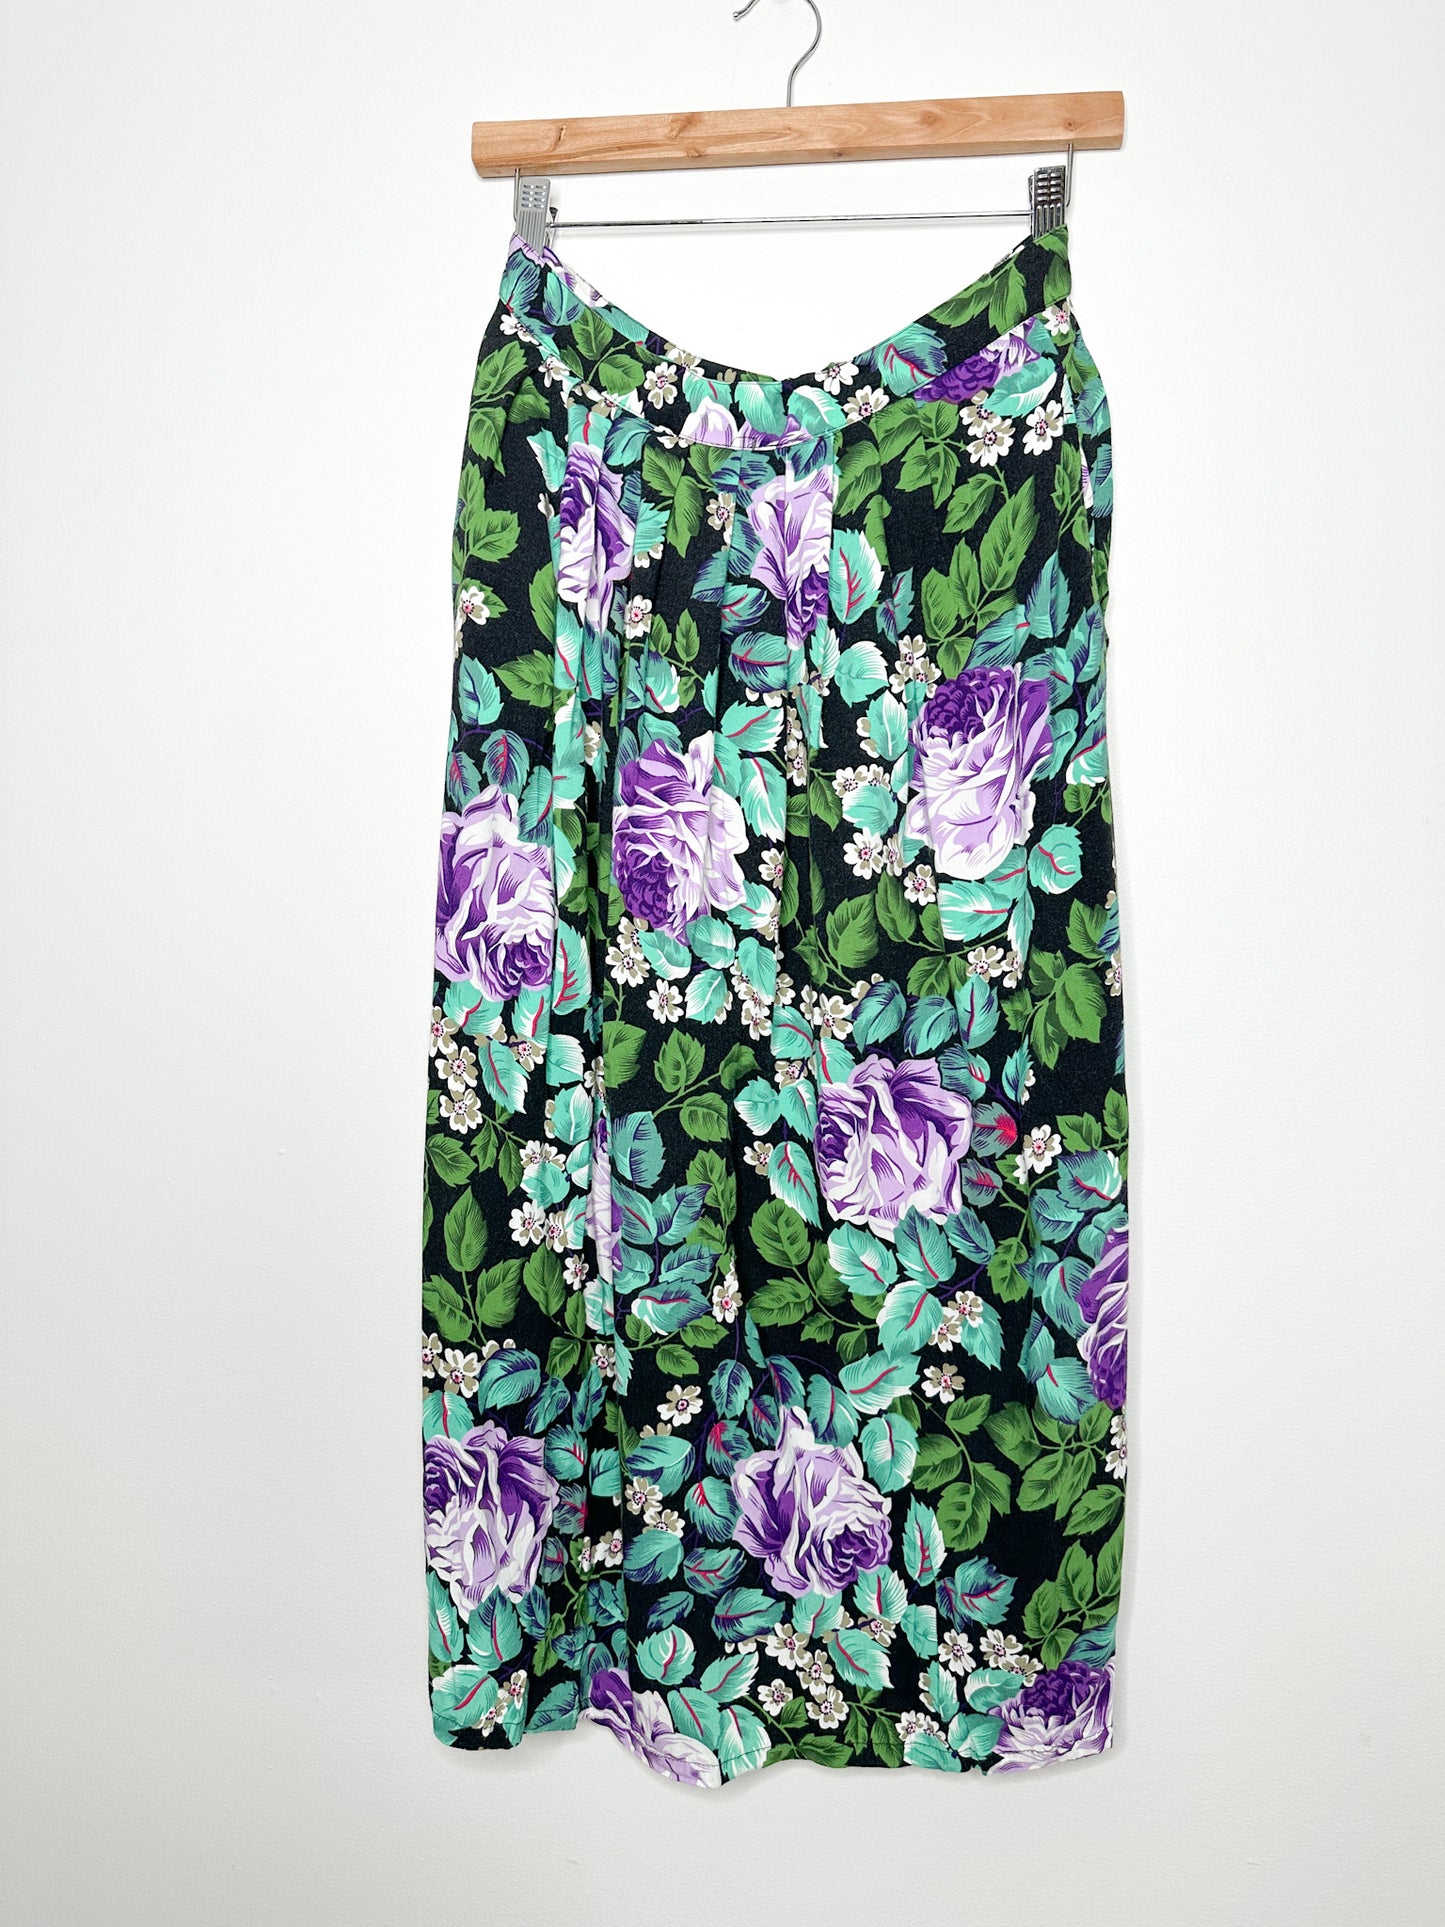 Vintage Non-Stop ALine Floral Skirt Size 11| Vintag Floral Skirt | Made in Korea